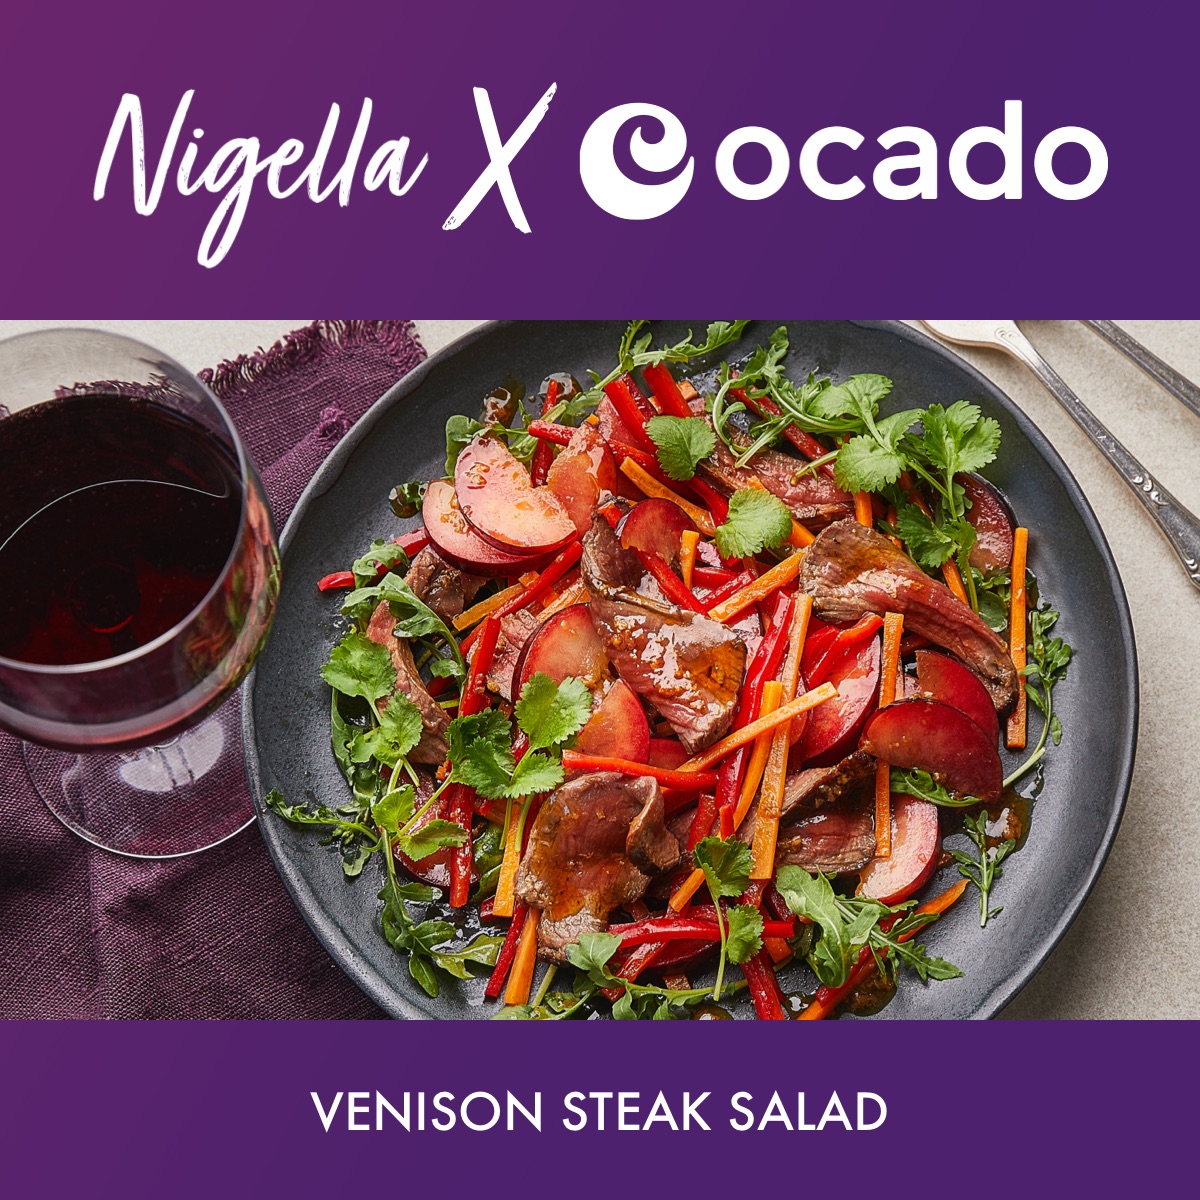 Venison Steak Salad